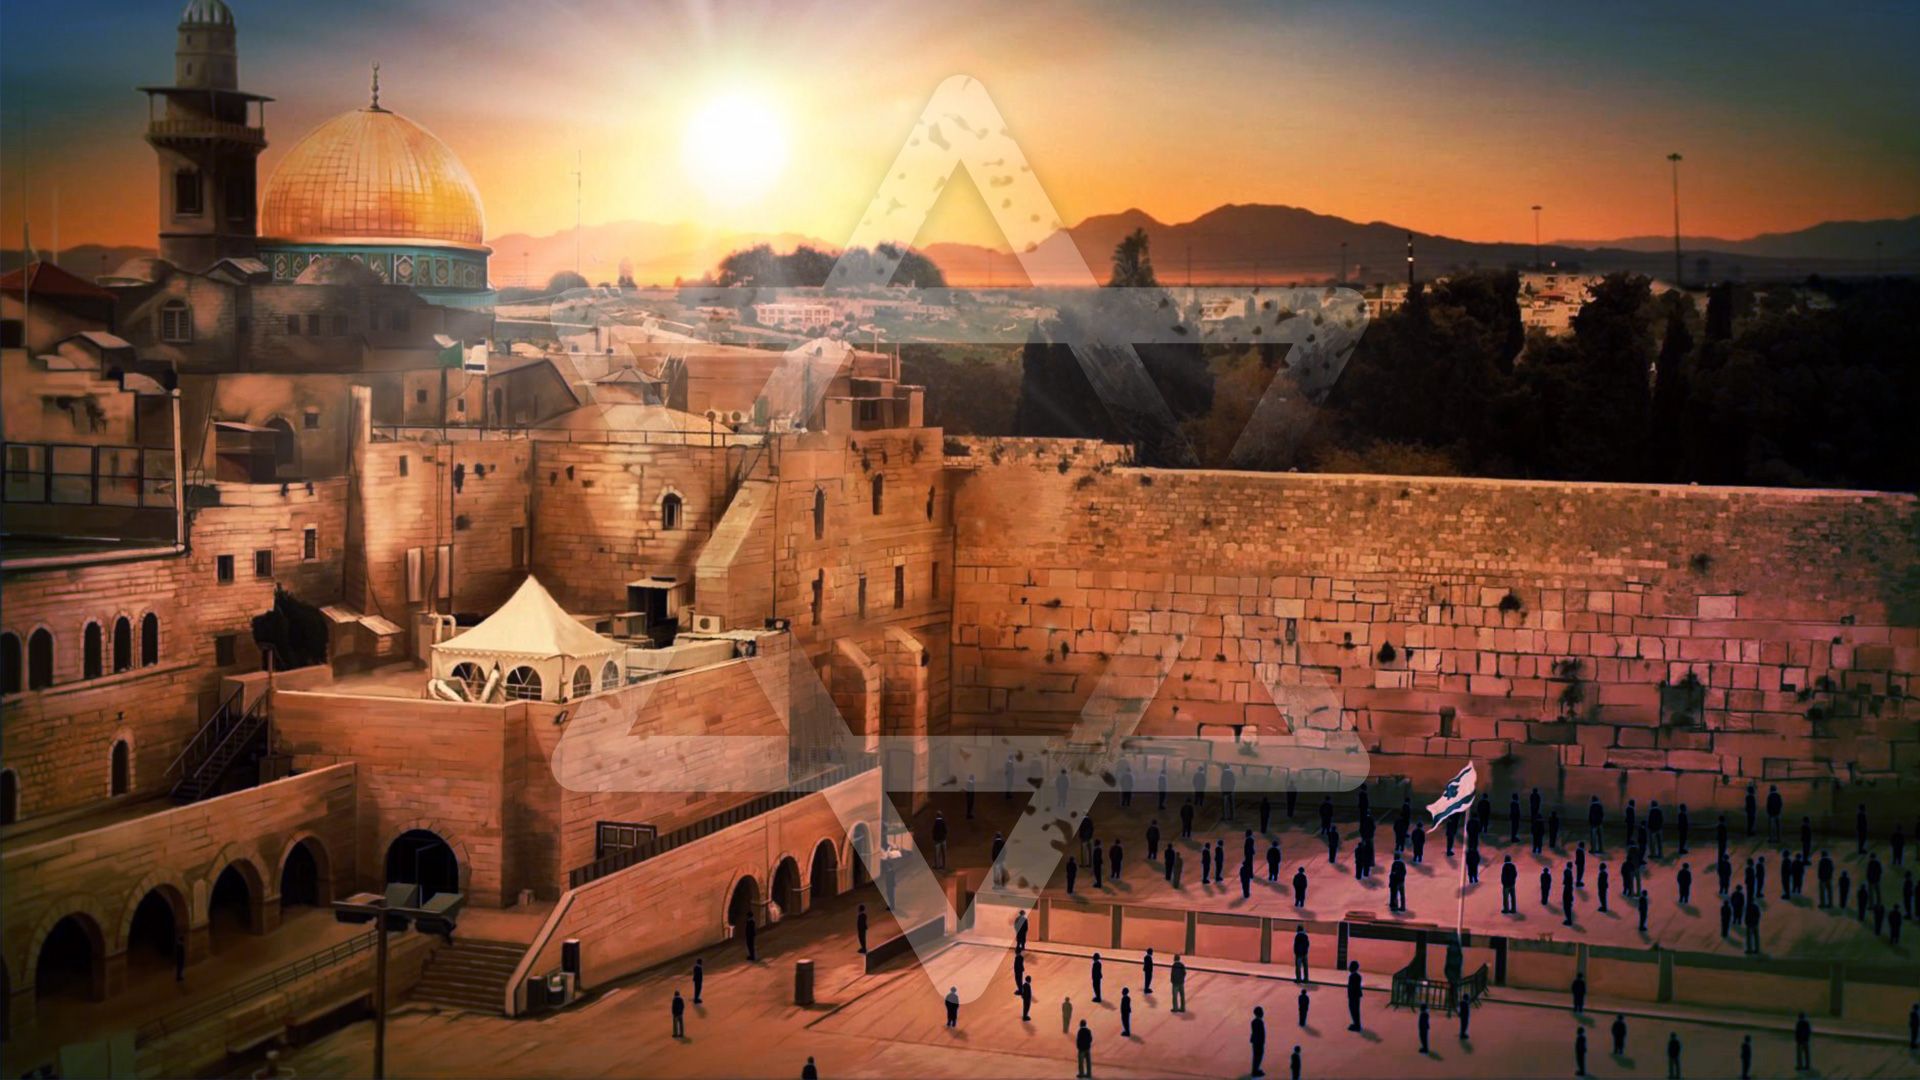 Promotional image for Израиль — вчера, сегодня, завтра